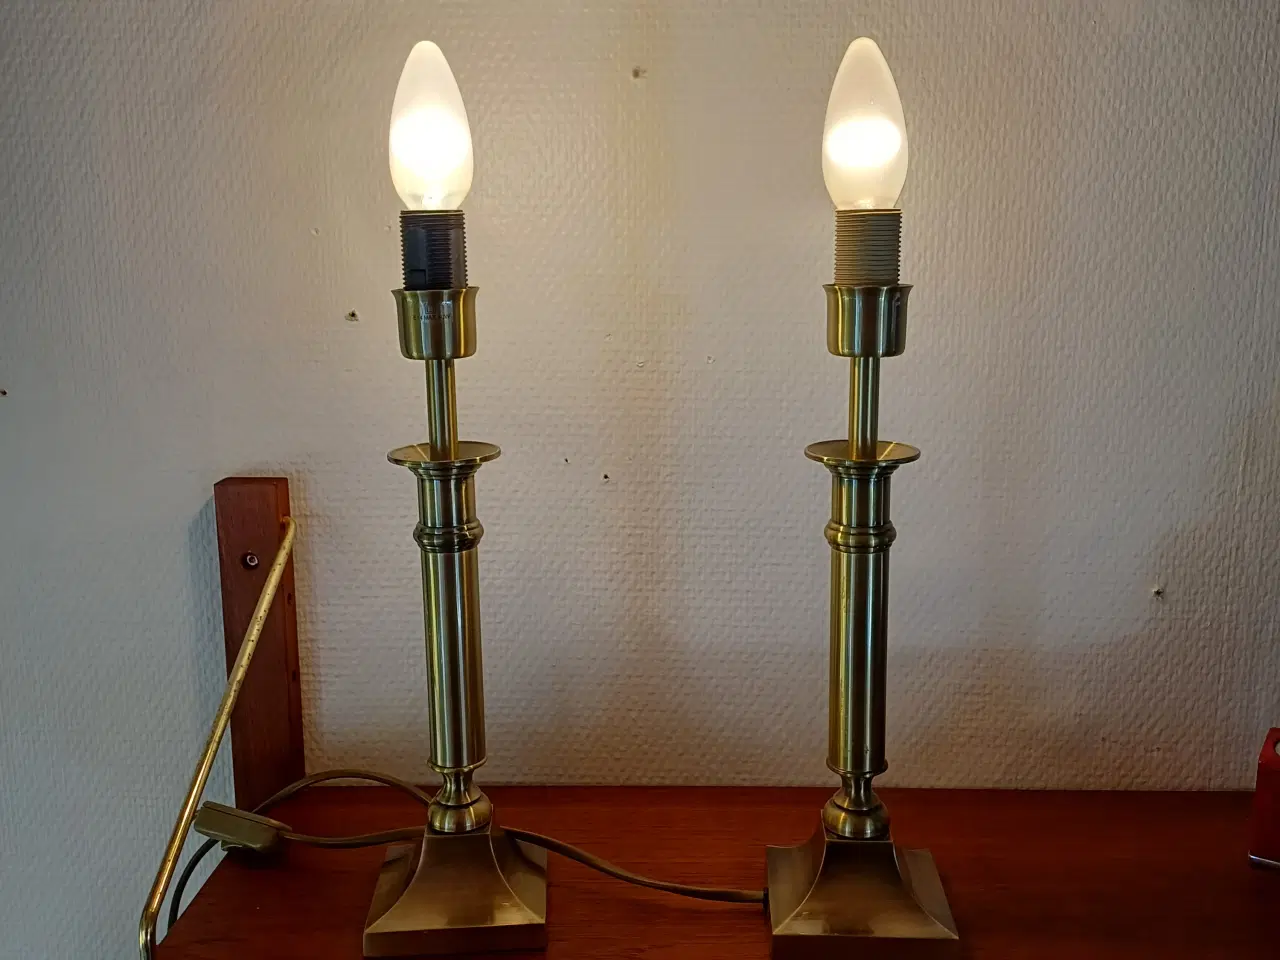 Billede 1 - To flotte lamper fra lamp gustaf ab